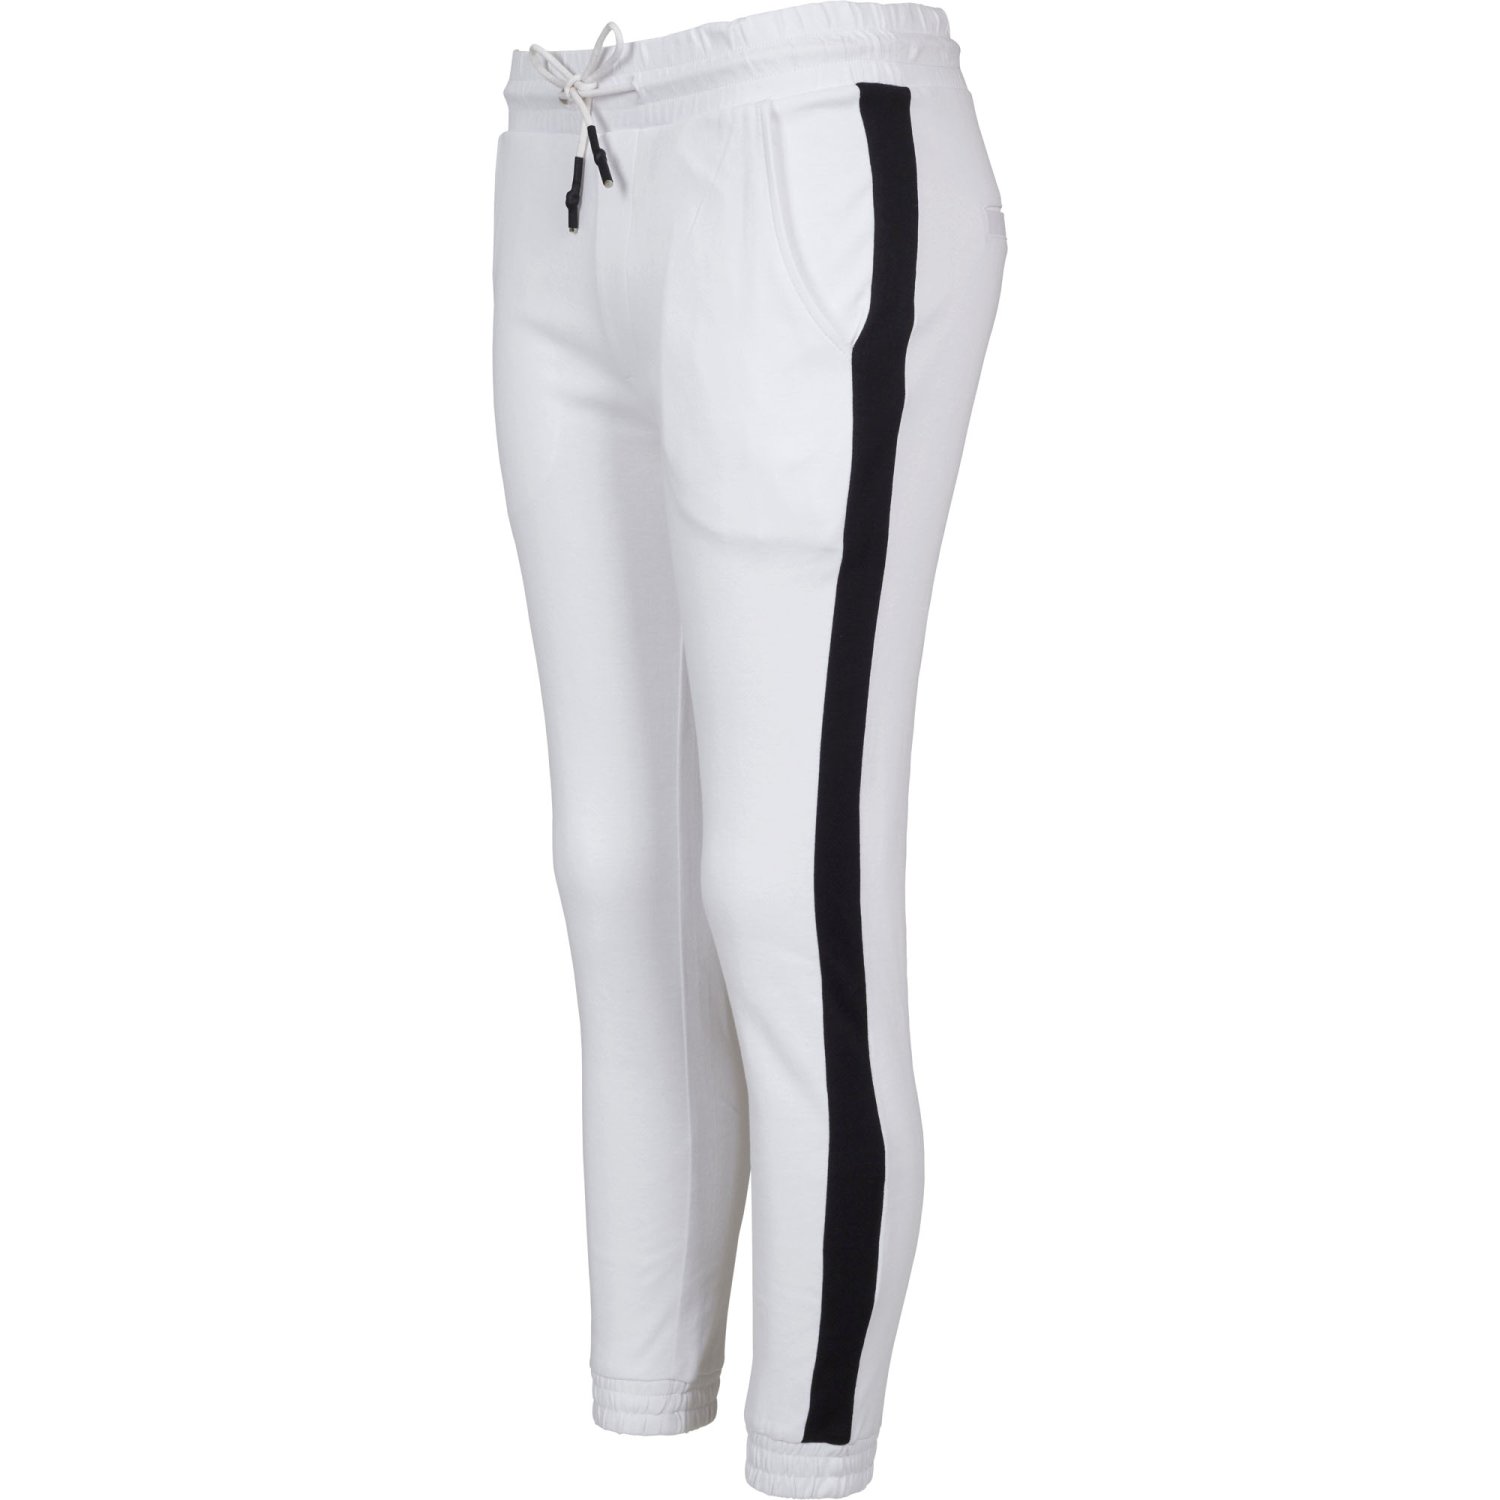 Buy Urban Classics Ladies - INTERLOCK Jogging Sweatpants white - M